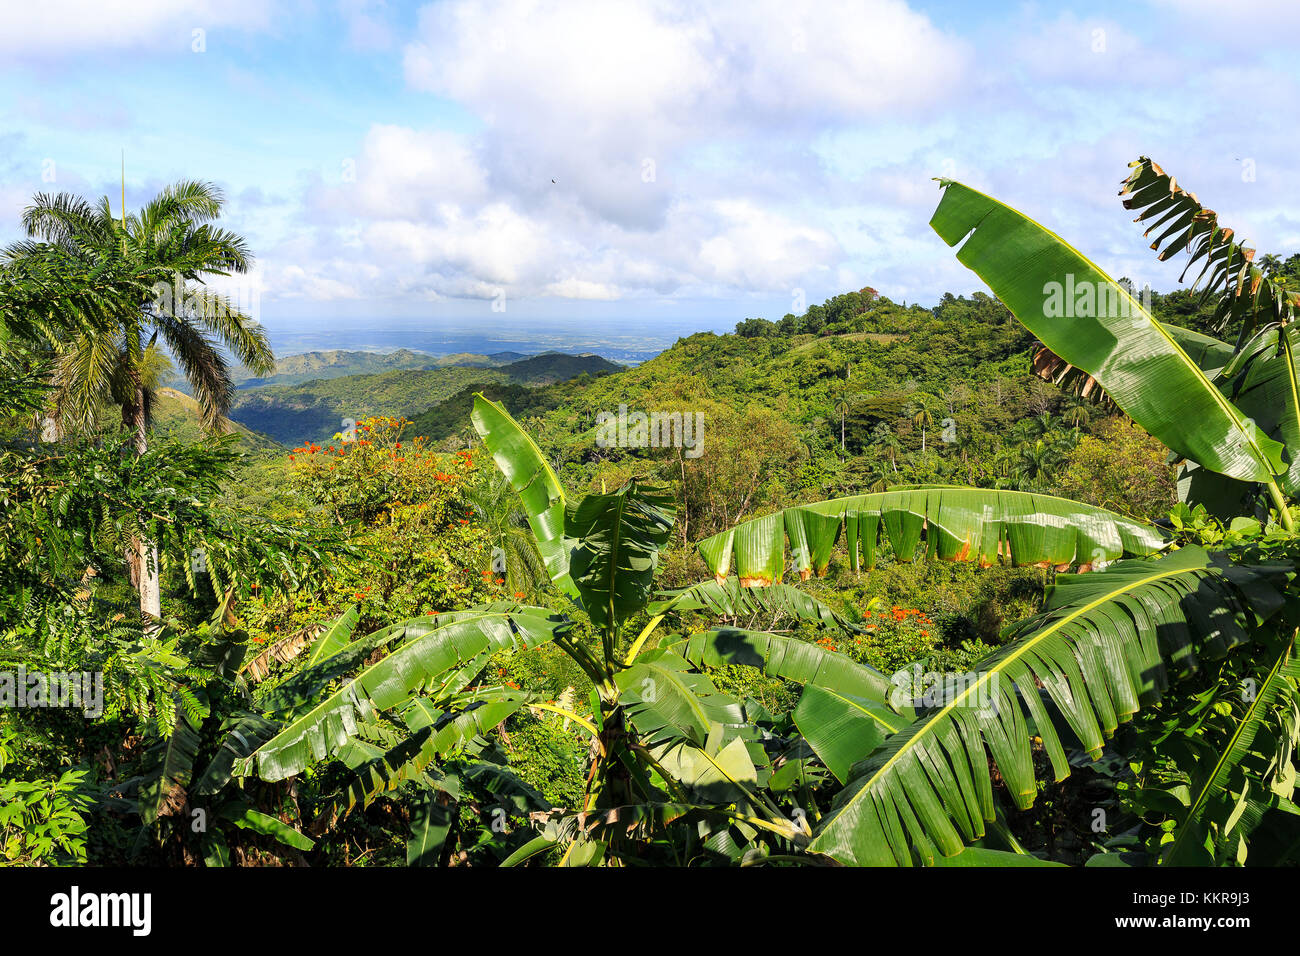 Landxcape mit Palmen und Bananenpalmen in Kuba, der größten Insel der Karibik, mit einer Fläche von 109,884 Quadratkilometern und der zweitbevölkerungsreichsten nach Hispaniola, mit über 11 Millionen Einwohnern. Stockfoto